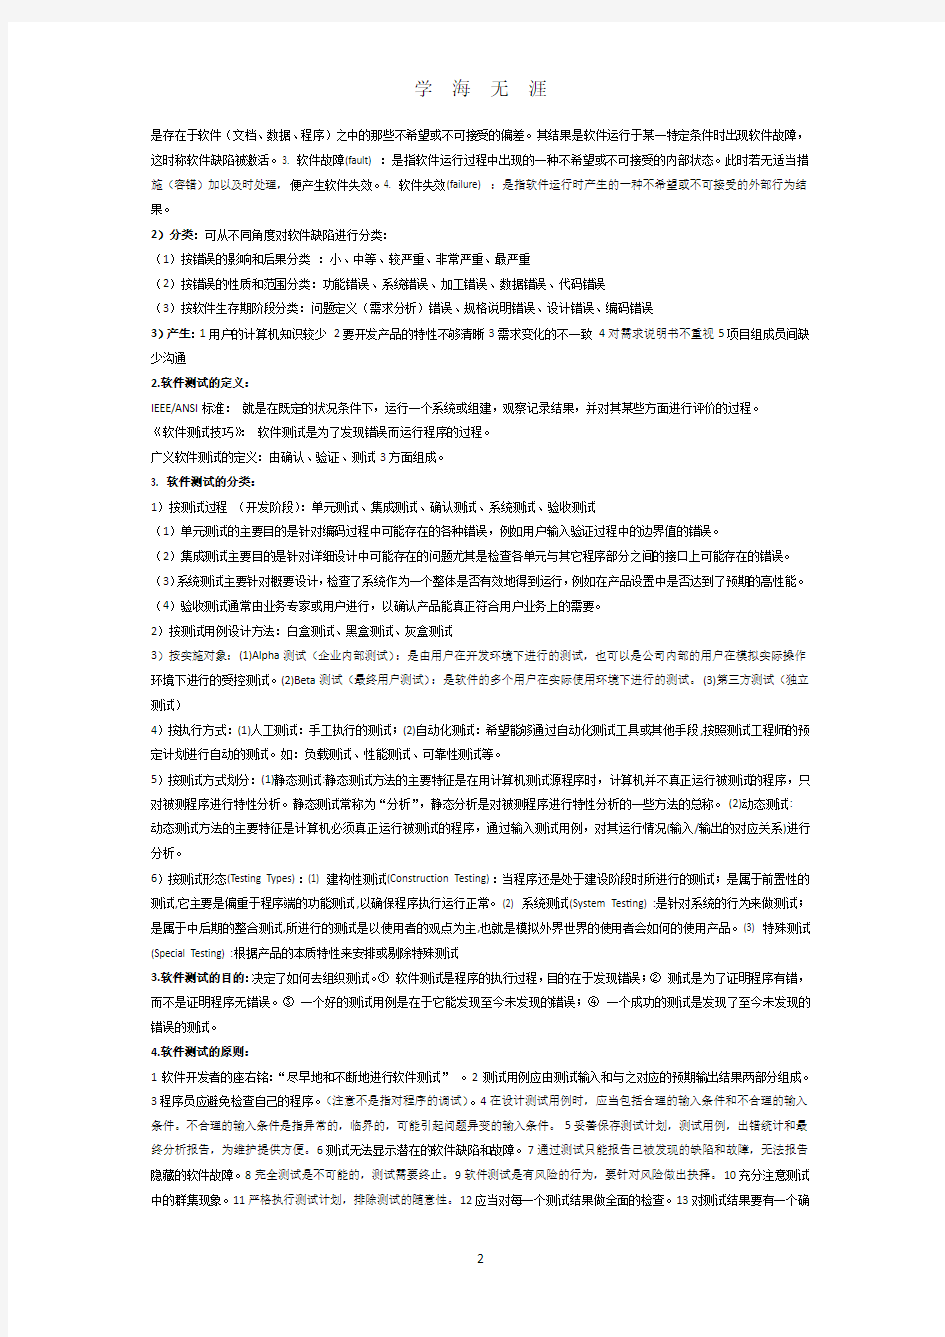 中科大软院软测期末复习提纲知识点(2020年7月整理).pdf